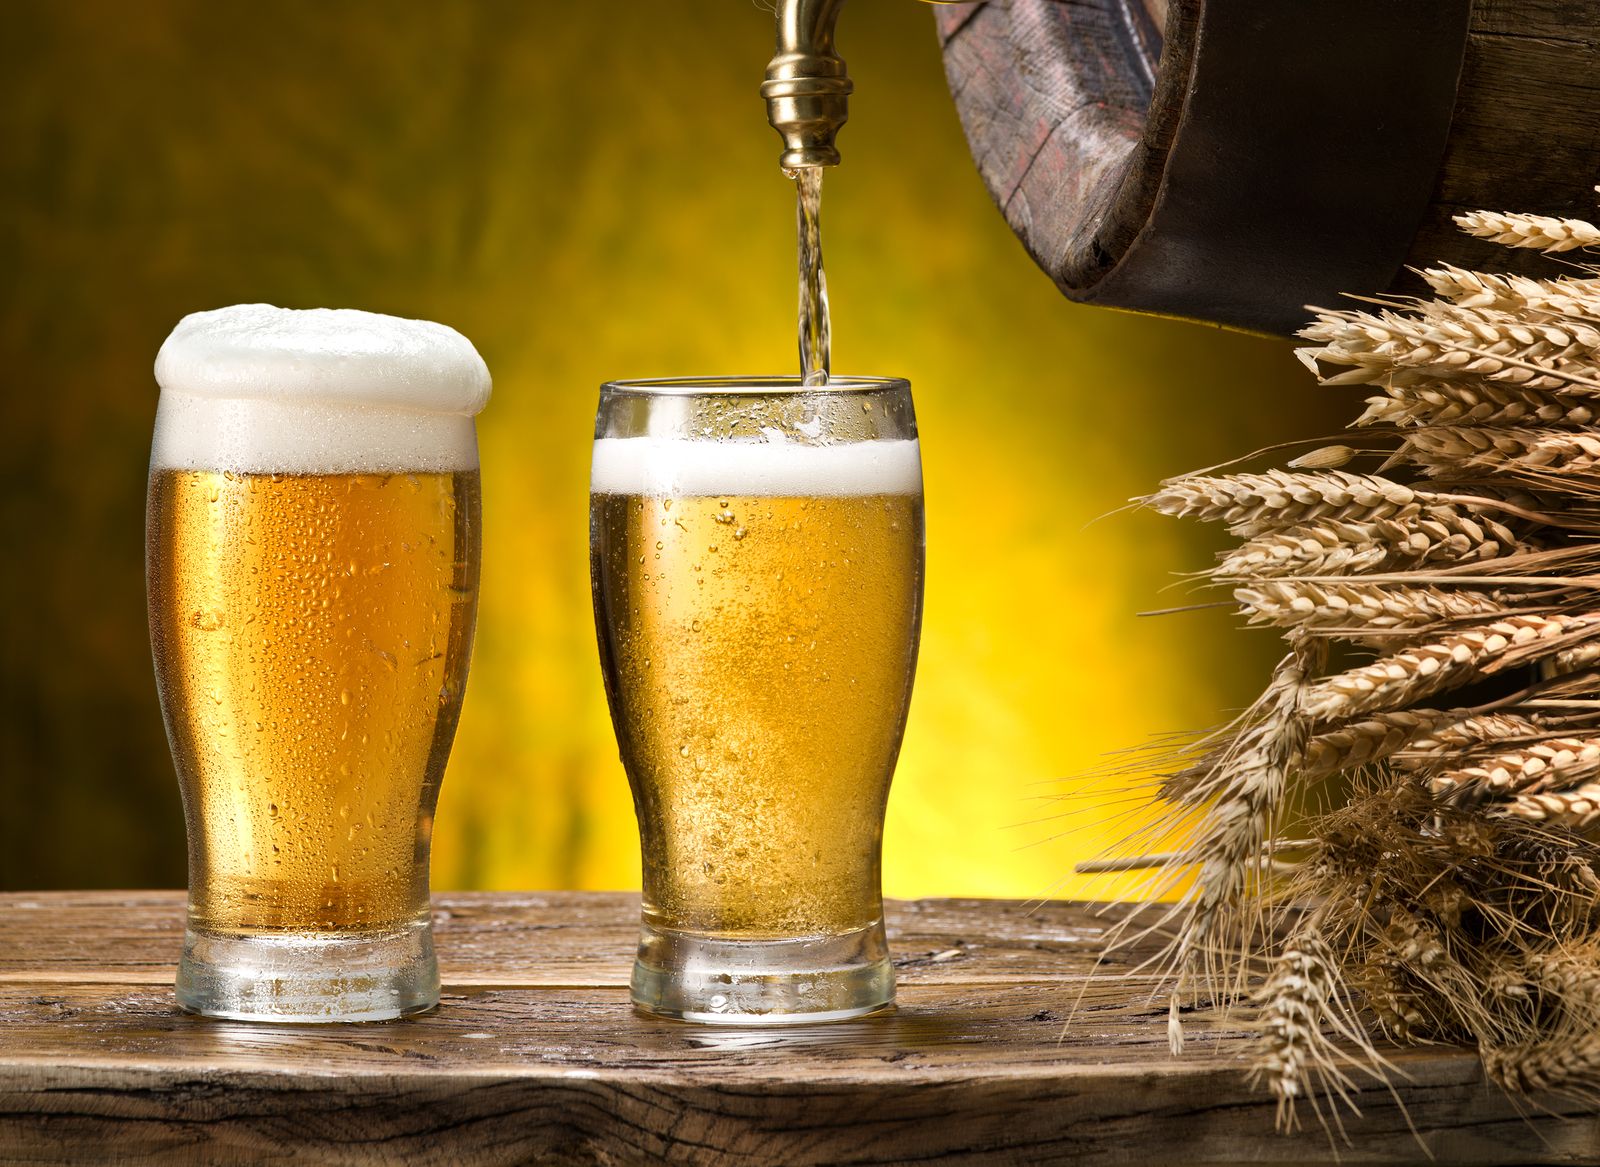 Argentina busca colocar más de su cebada en las cervezas de China